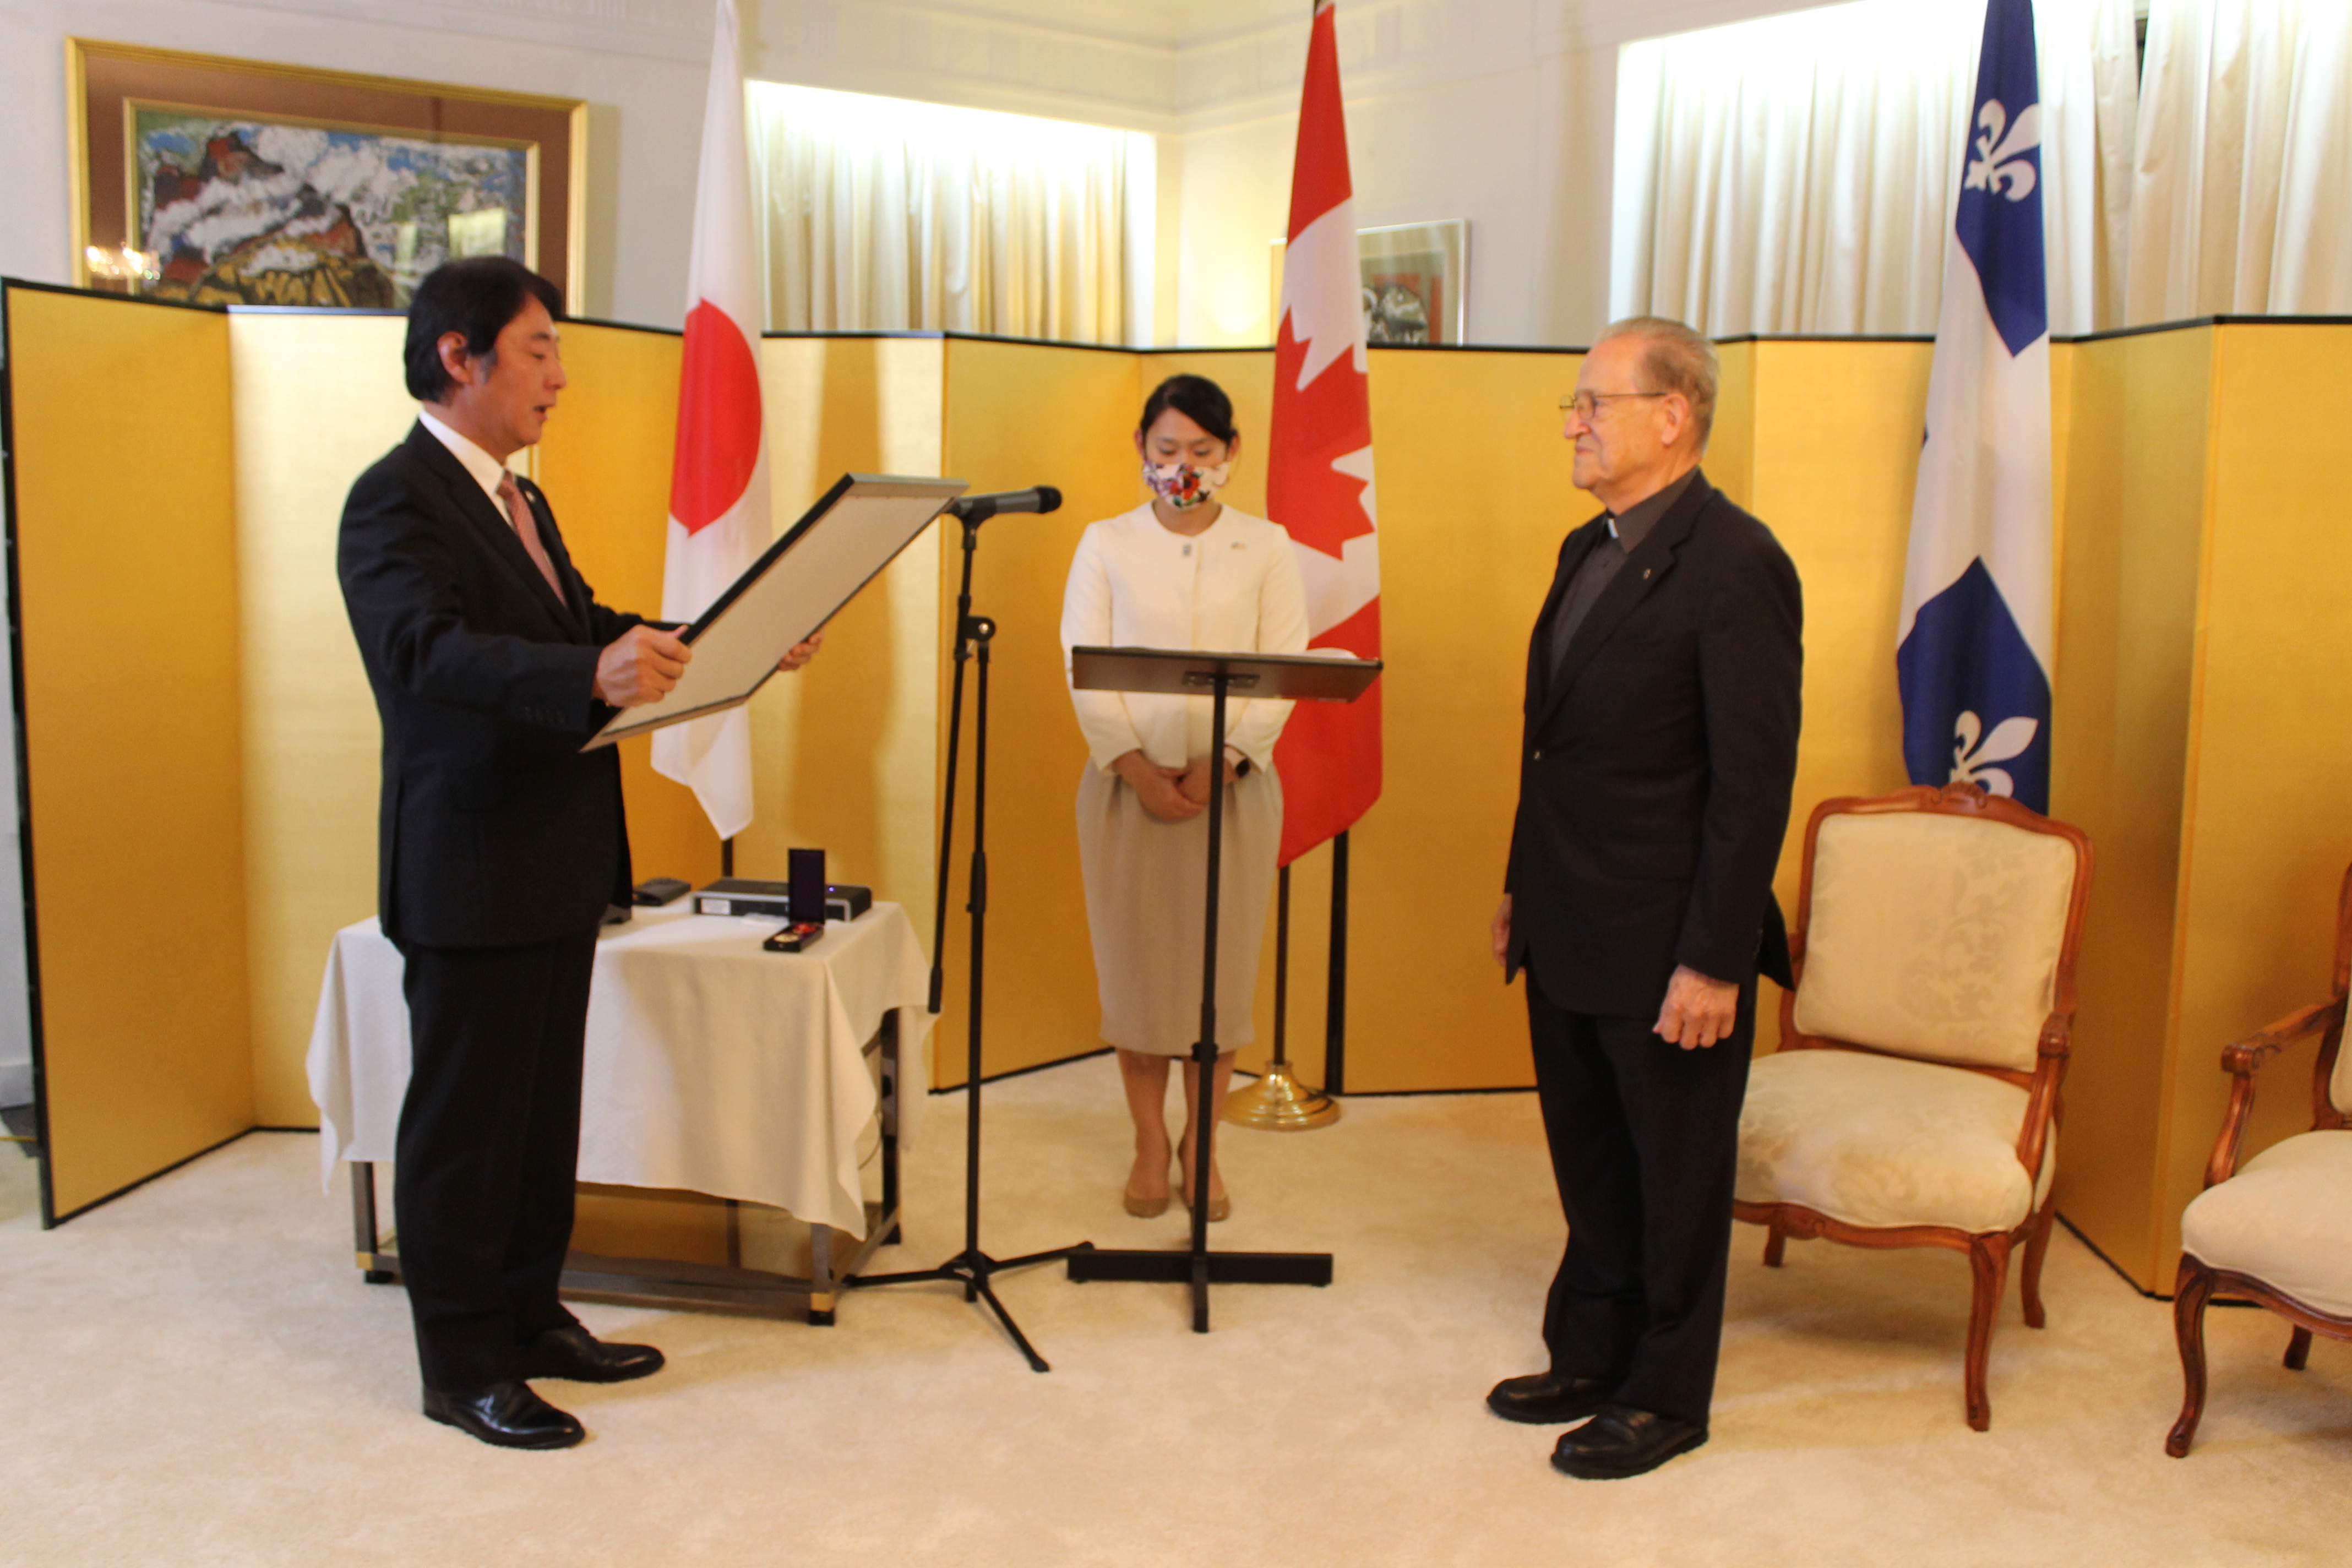 Le père Gaétan Labadie honoré par le consul général du Japon